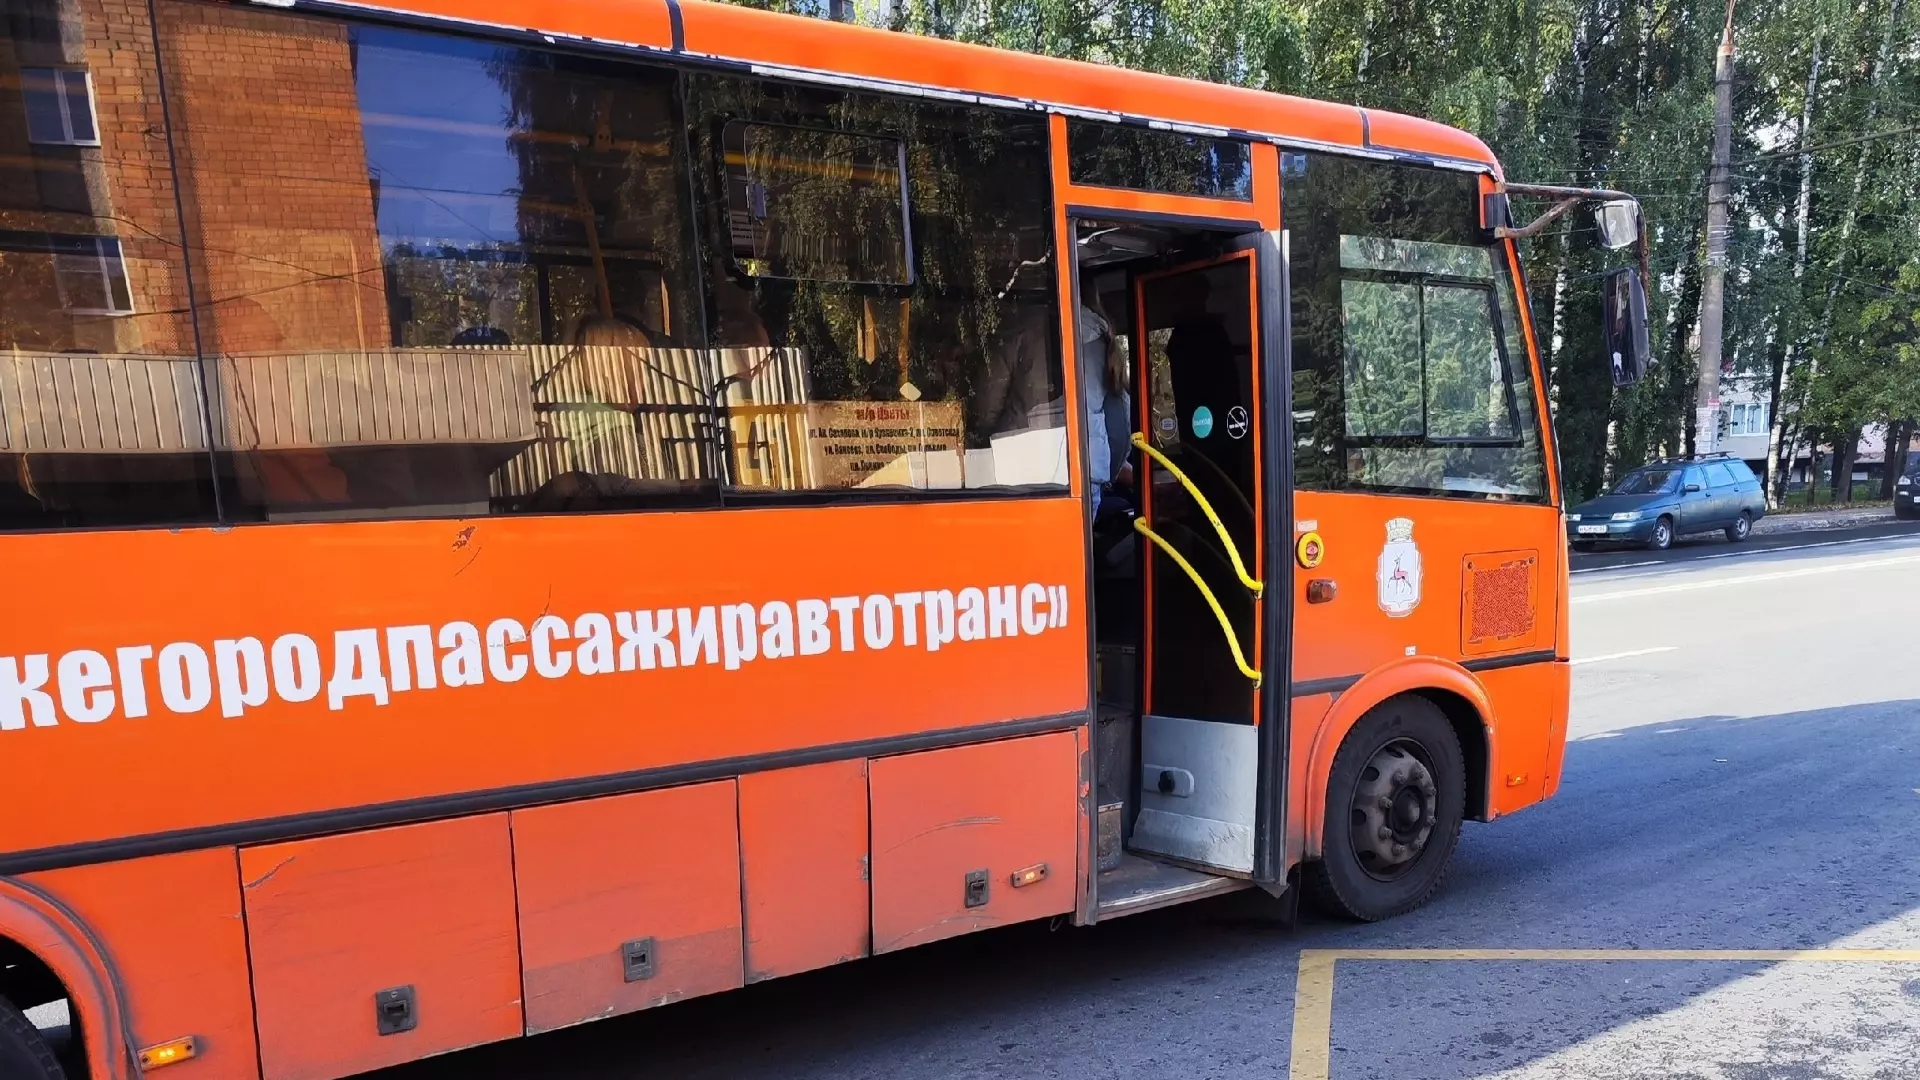 Автобус №226 запускают в Нижегородской области уже на этой неделе